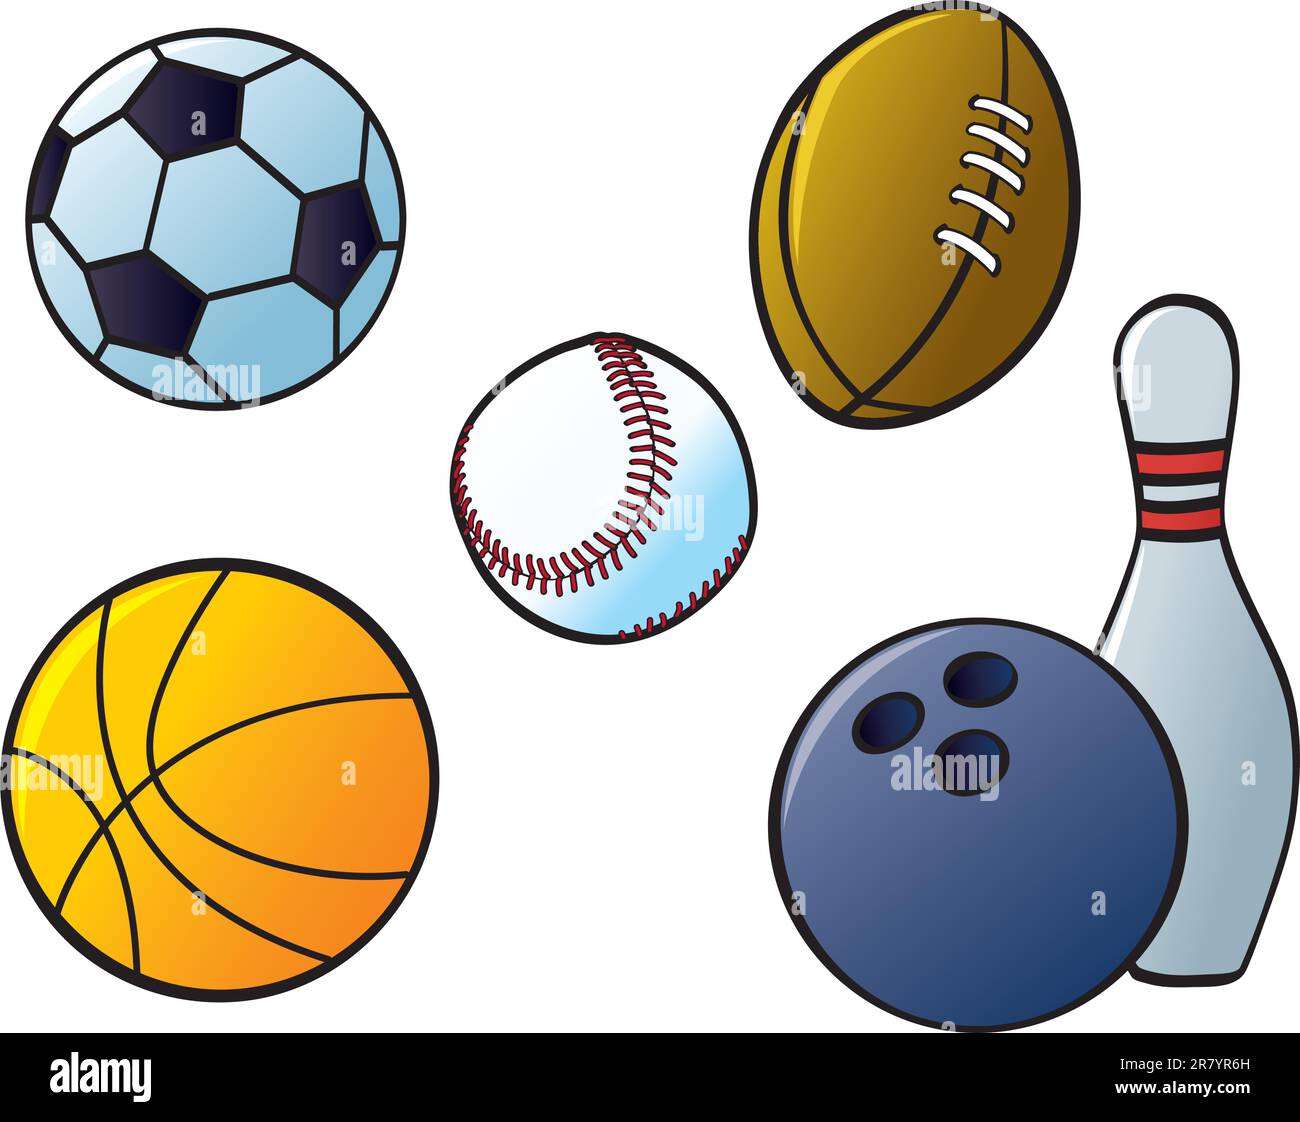 Fünf verschiedene Sportbälle von Sportarten, die in Nordamerika und Europa üblich sind. Stock Vektor